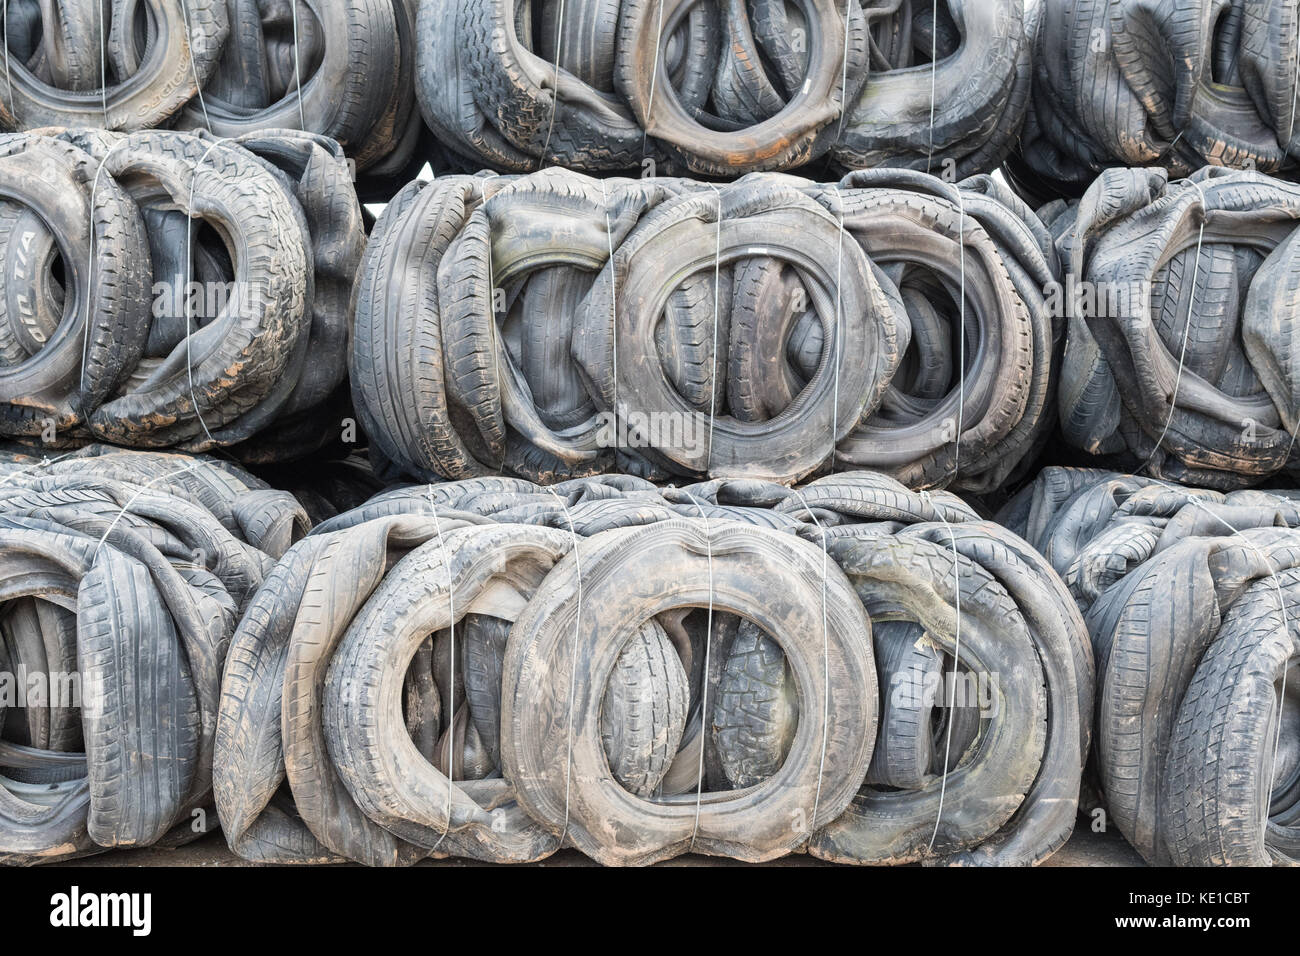 Recyclage des pneus - balles de pneus pour la construction et/ou les défenses marines Banque D'Images